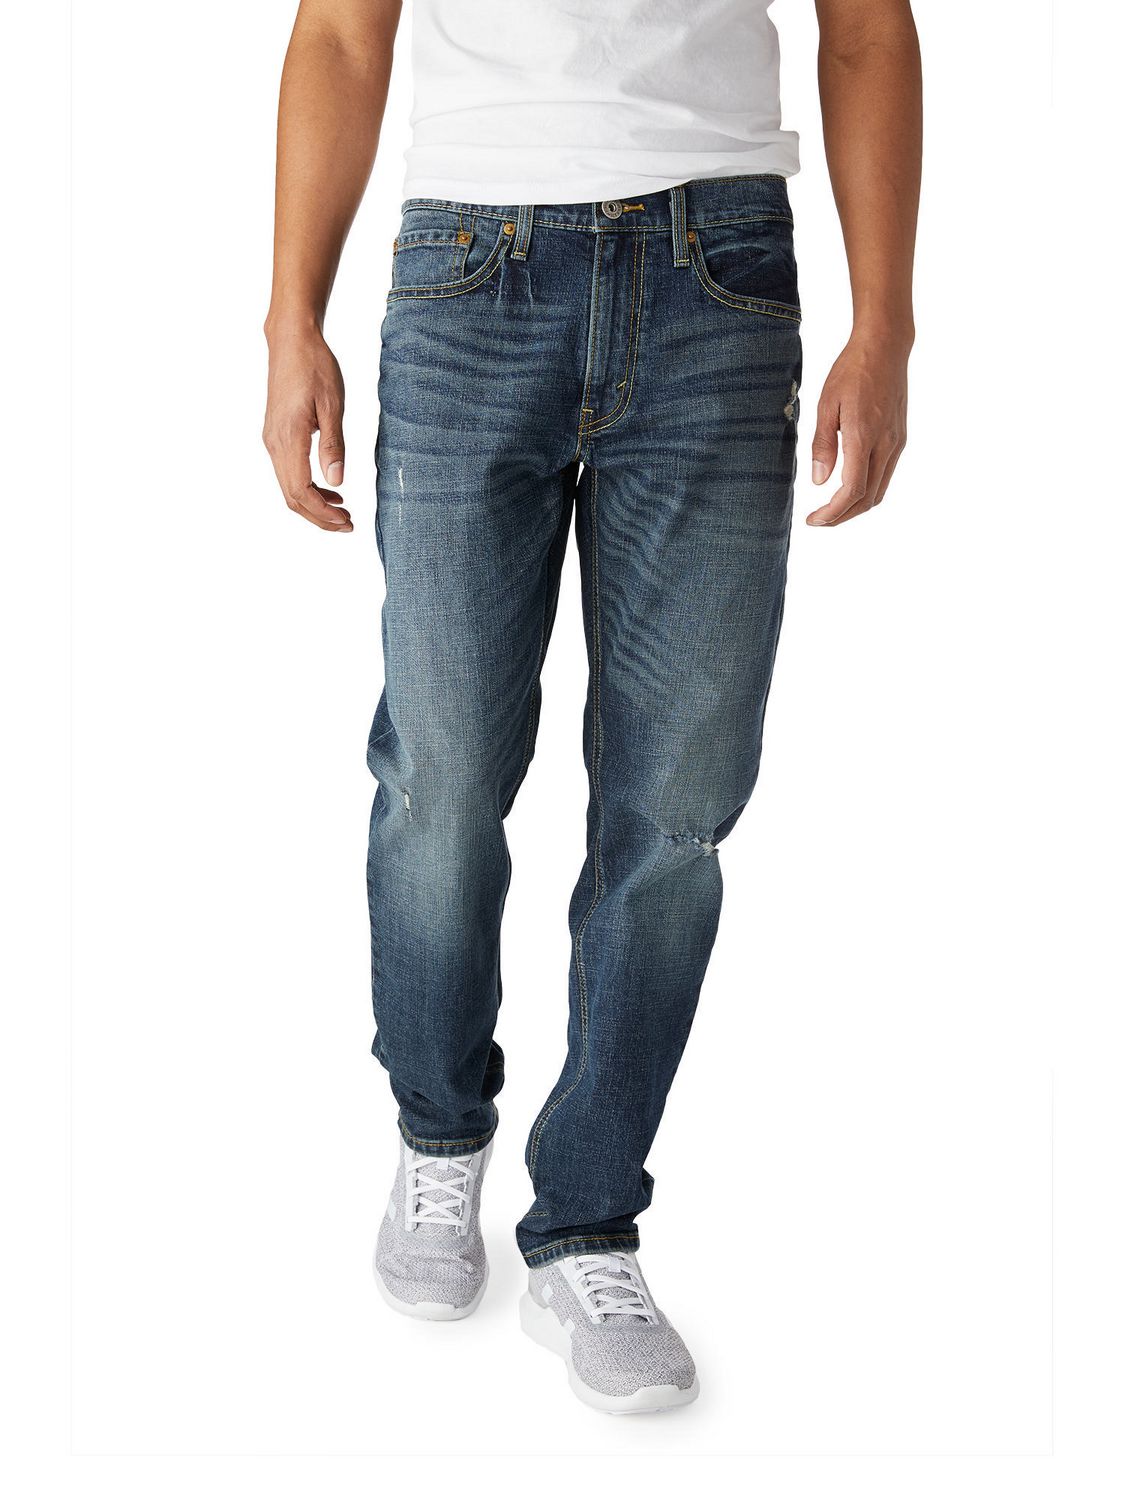 Descubrir 83+ imagen levi's mens tapered jeans - Thptnganamst.edu.vn